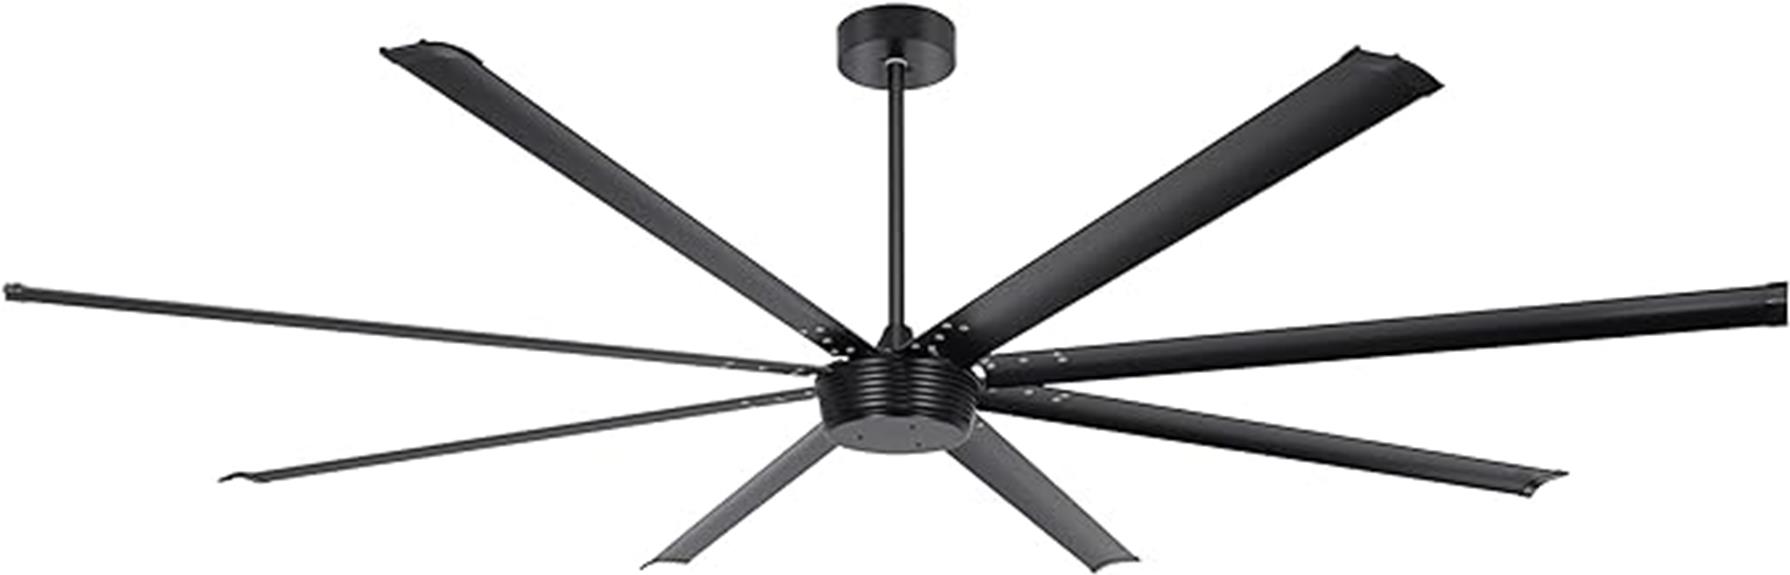 industrial dc ceiling fan